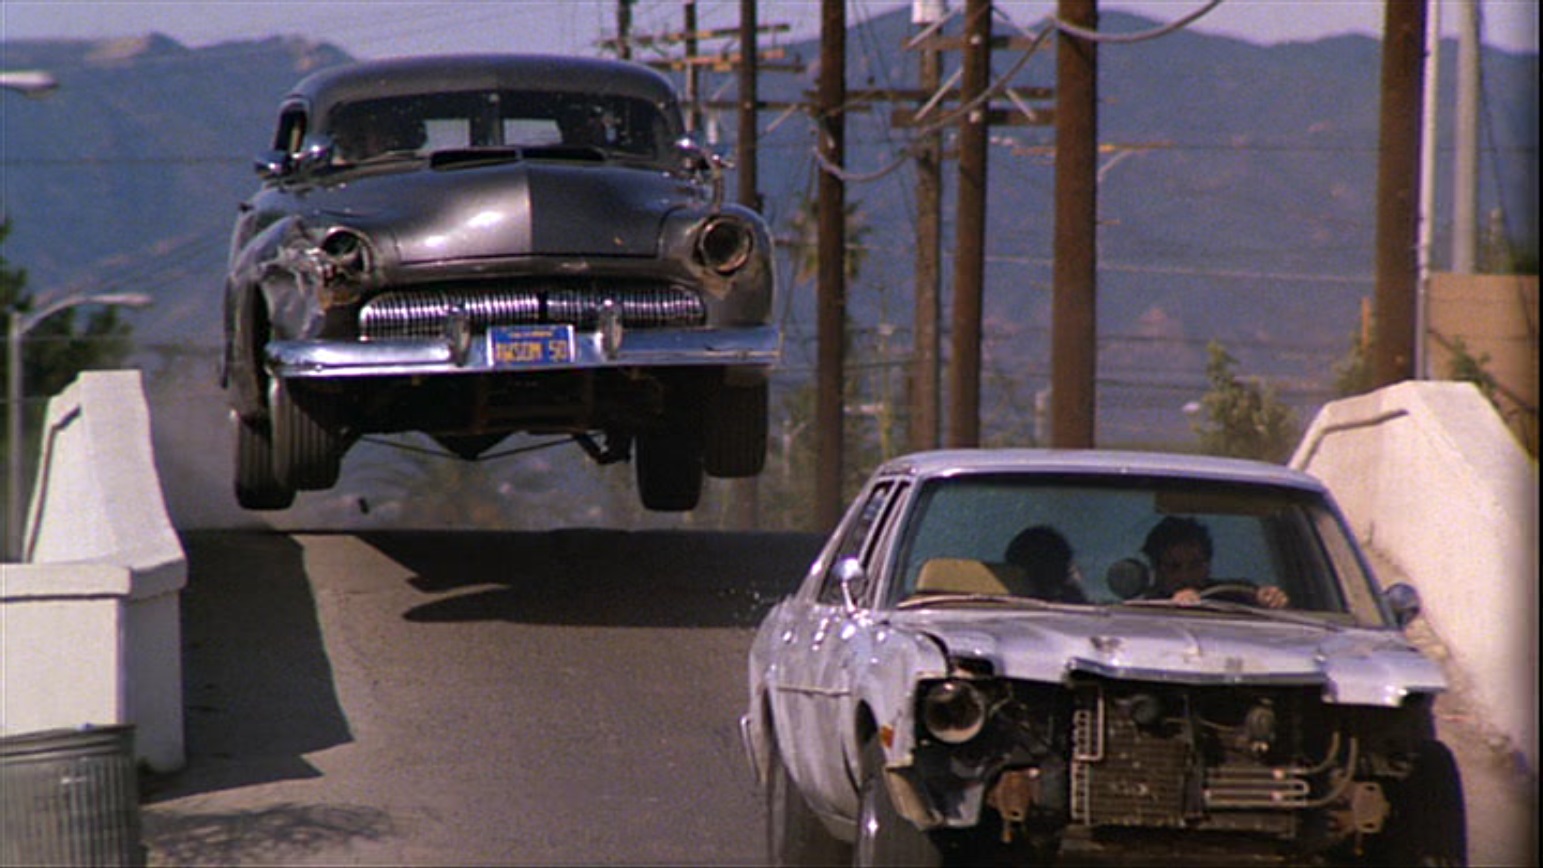 Car chase scene. Mercury 1950 Кобра. Mercury Monterey 1950 Cobra.